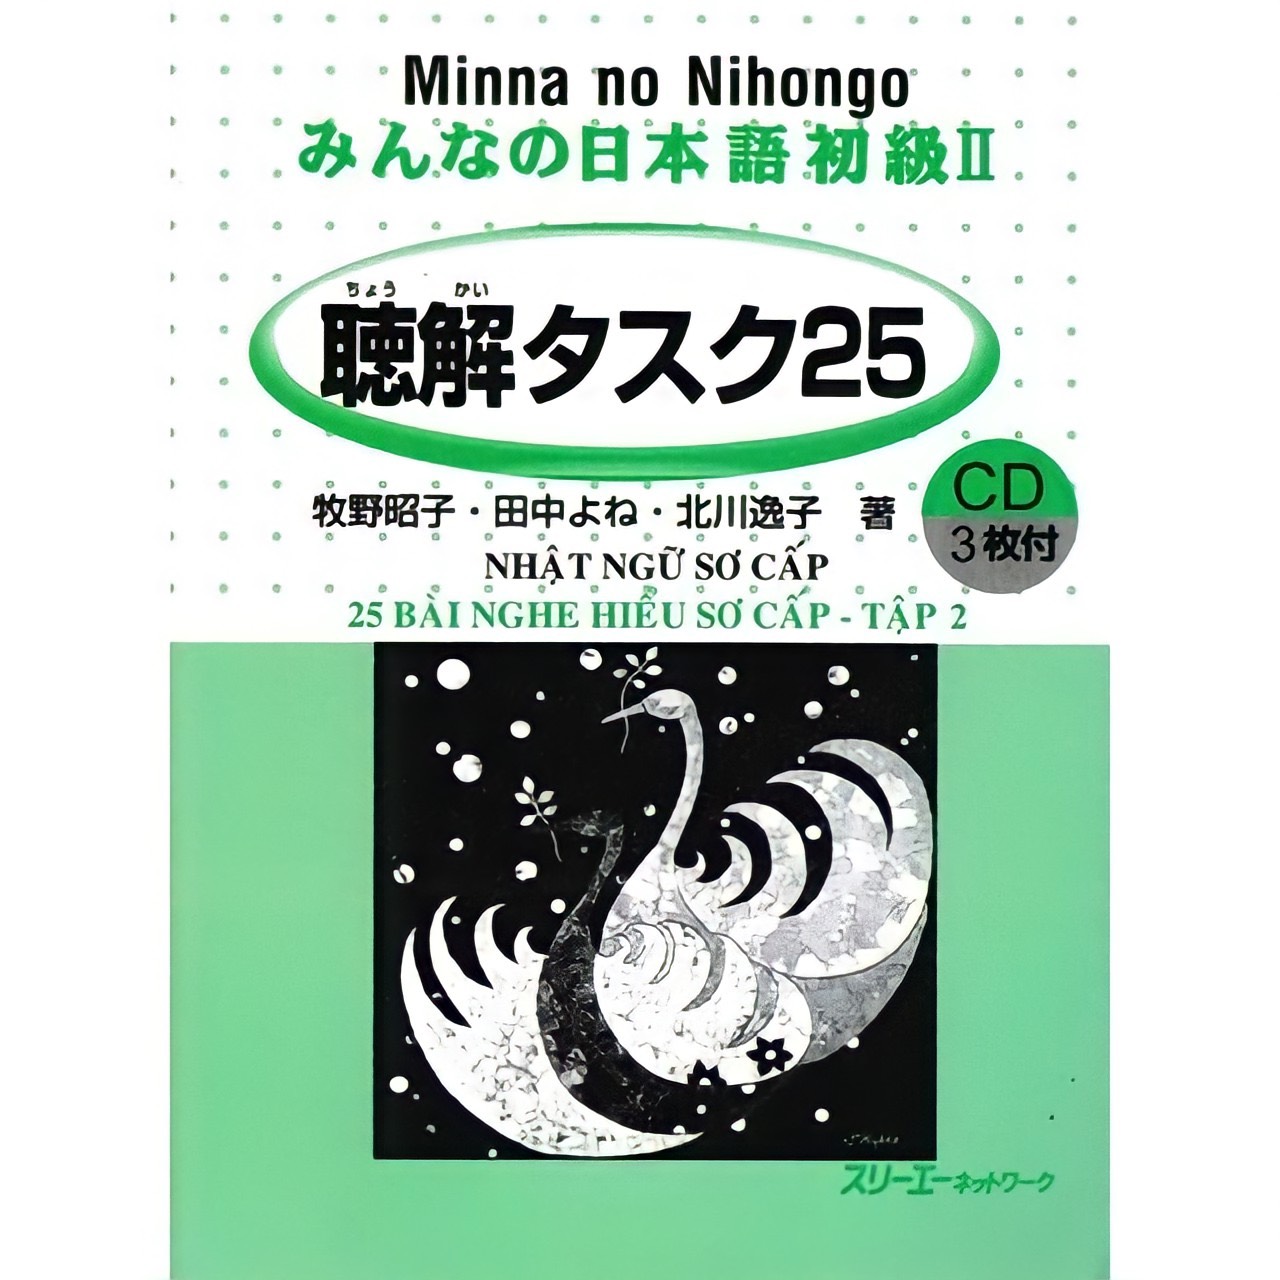 Minna No Nihongo Sơ cấp 2 Bản cũ: Choukai Tasuku, 25 bài nghe hiểu, Sơ cấp, Giá rẻ